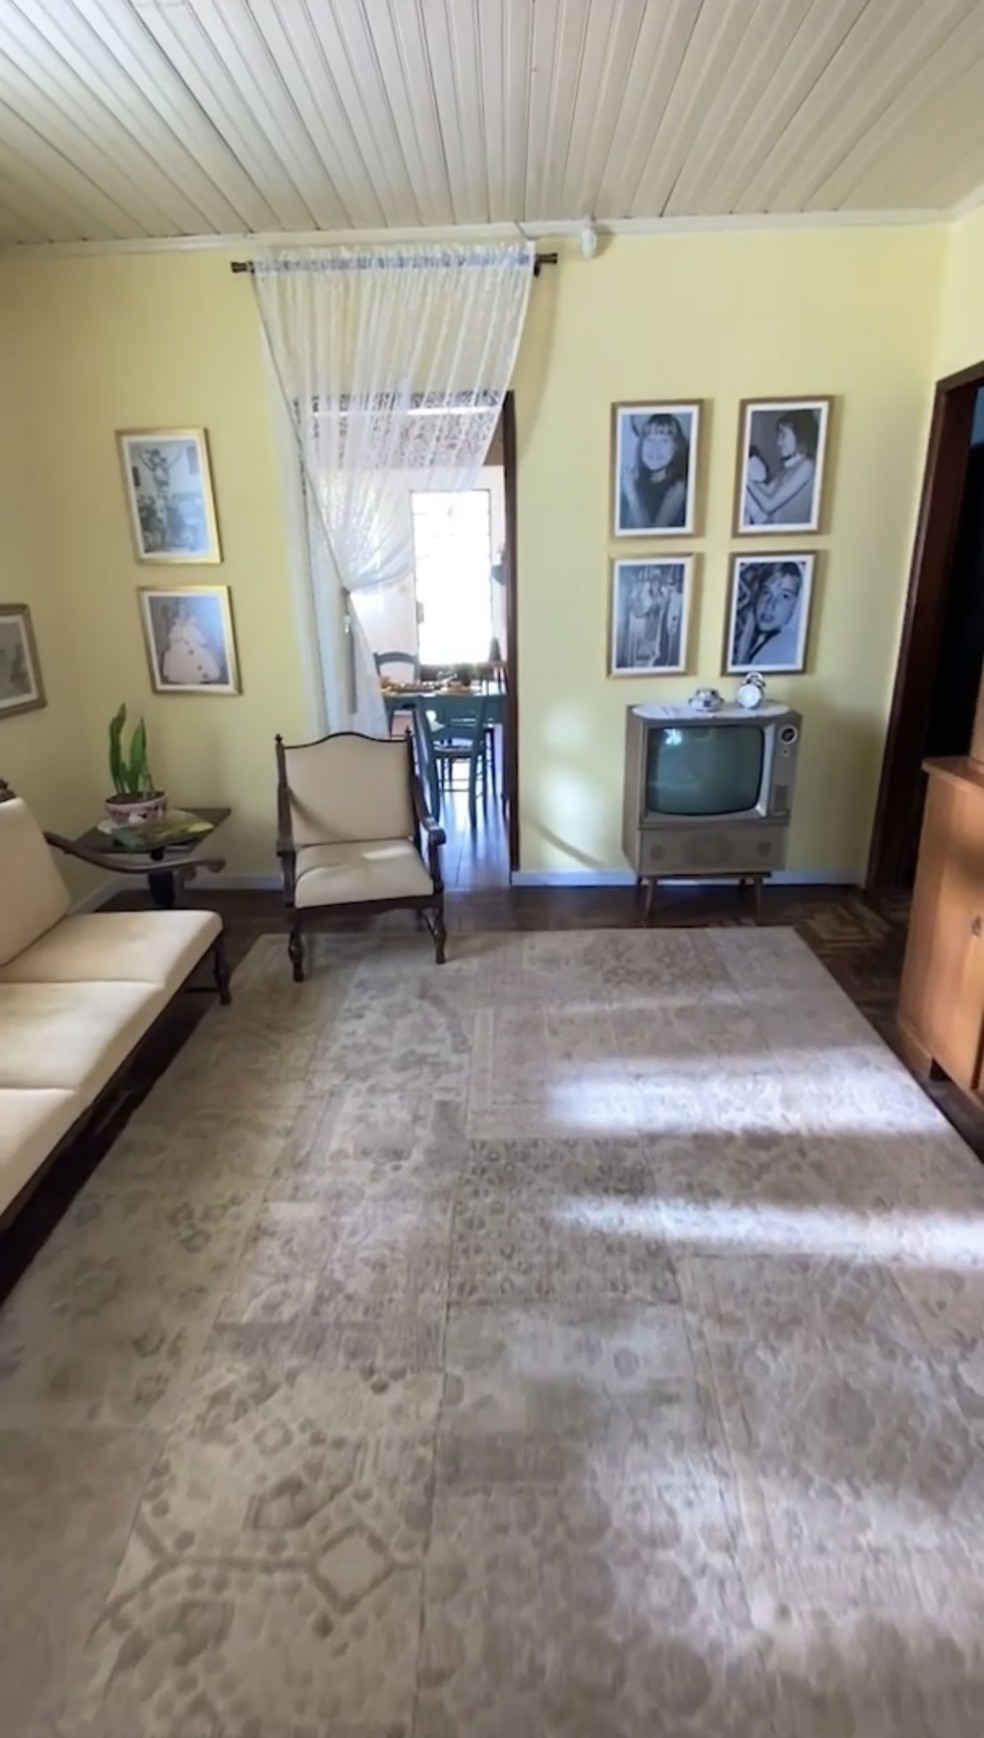 Sala de estar do Memorial da Xuxa, com quadros antigos e a TV de tubo — Foto: Reprodução/Instagram/@xuxameneghel